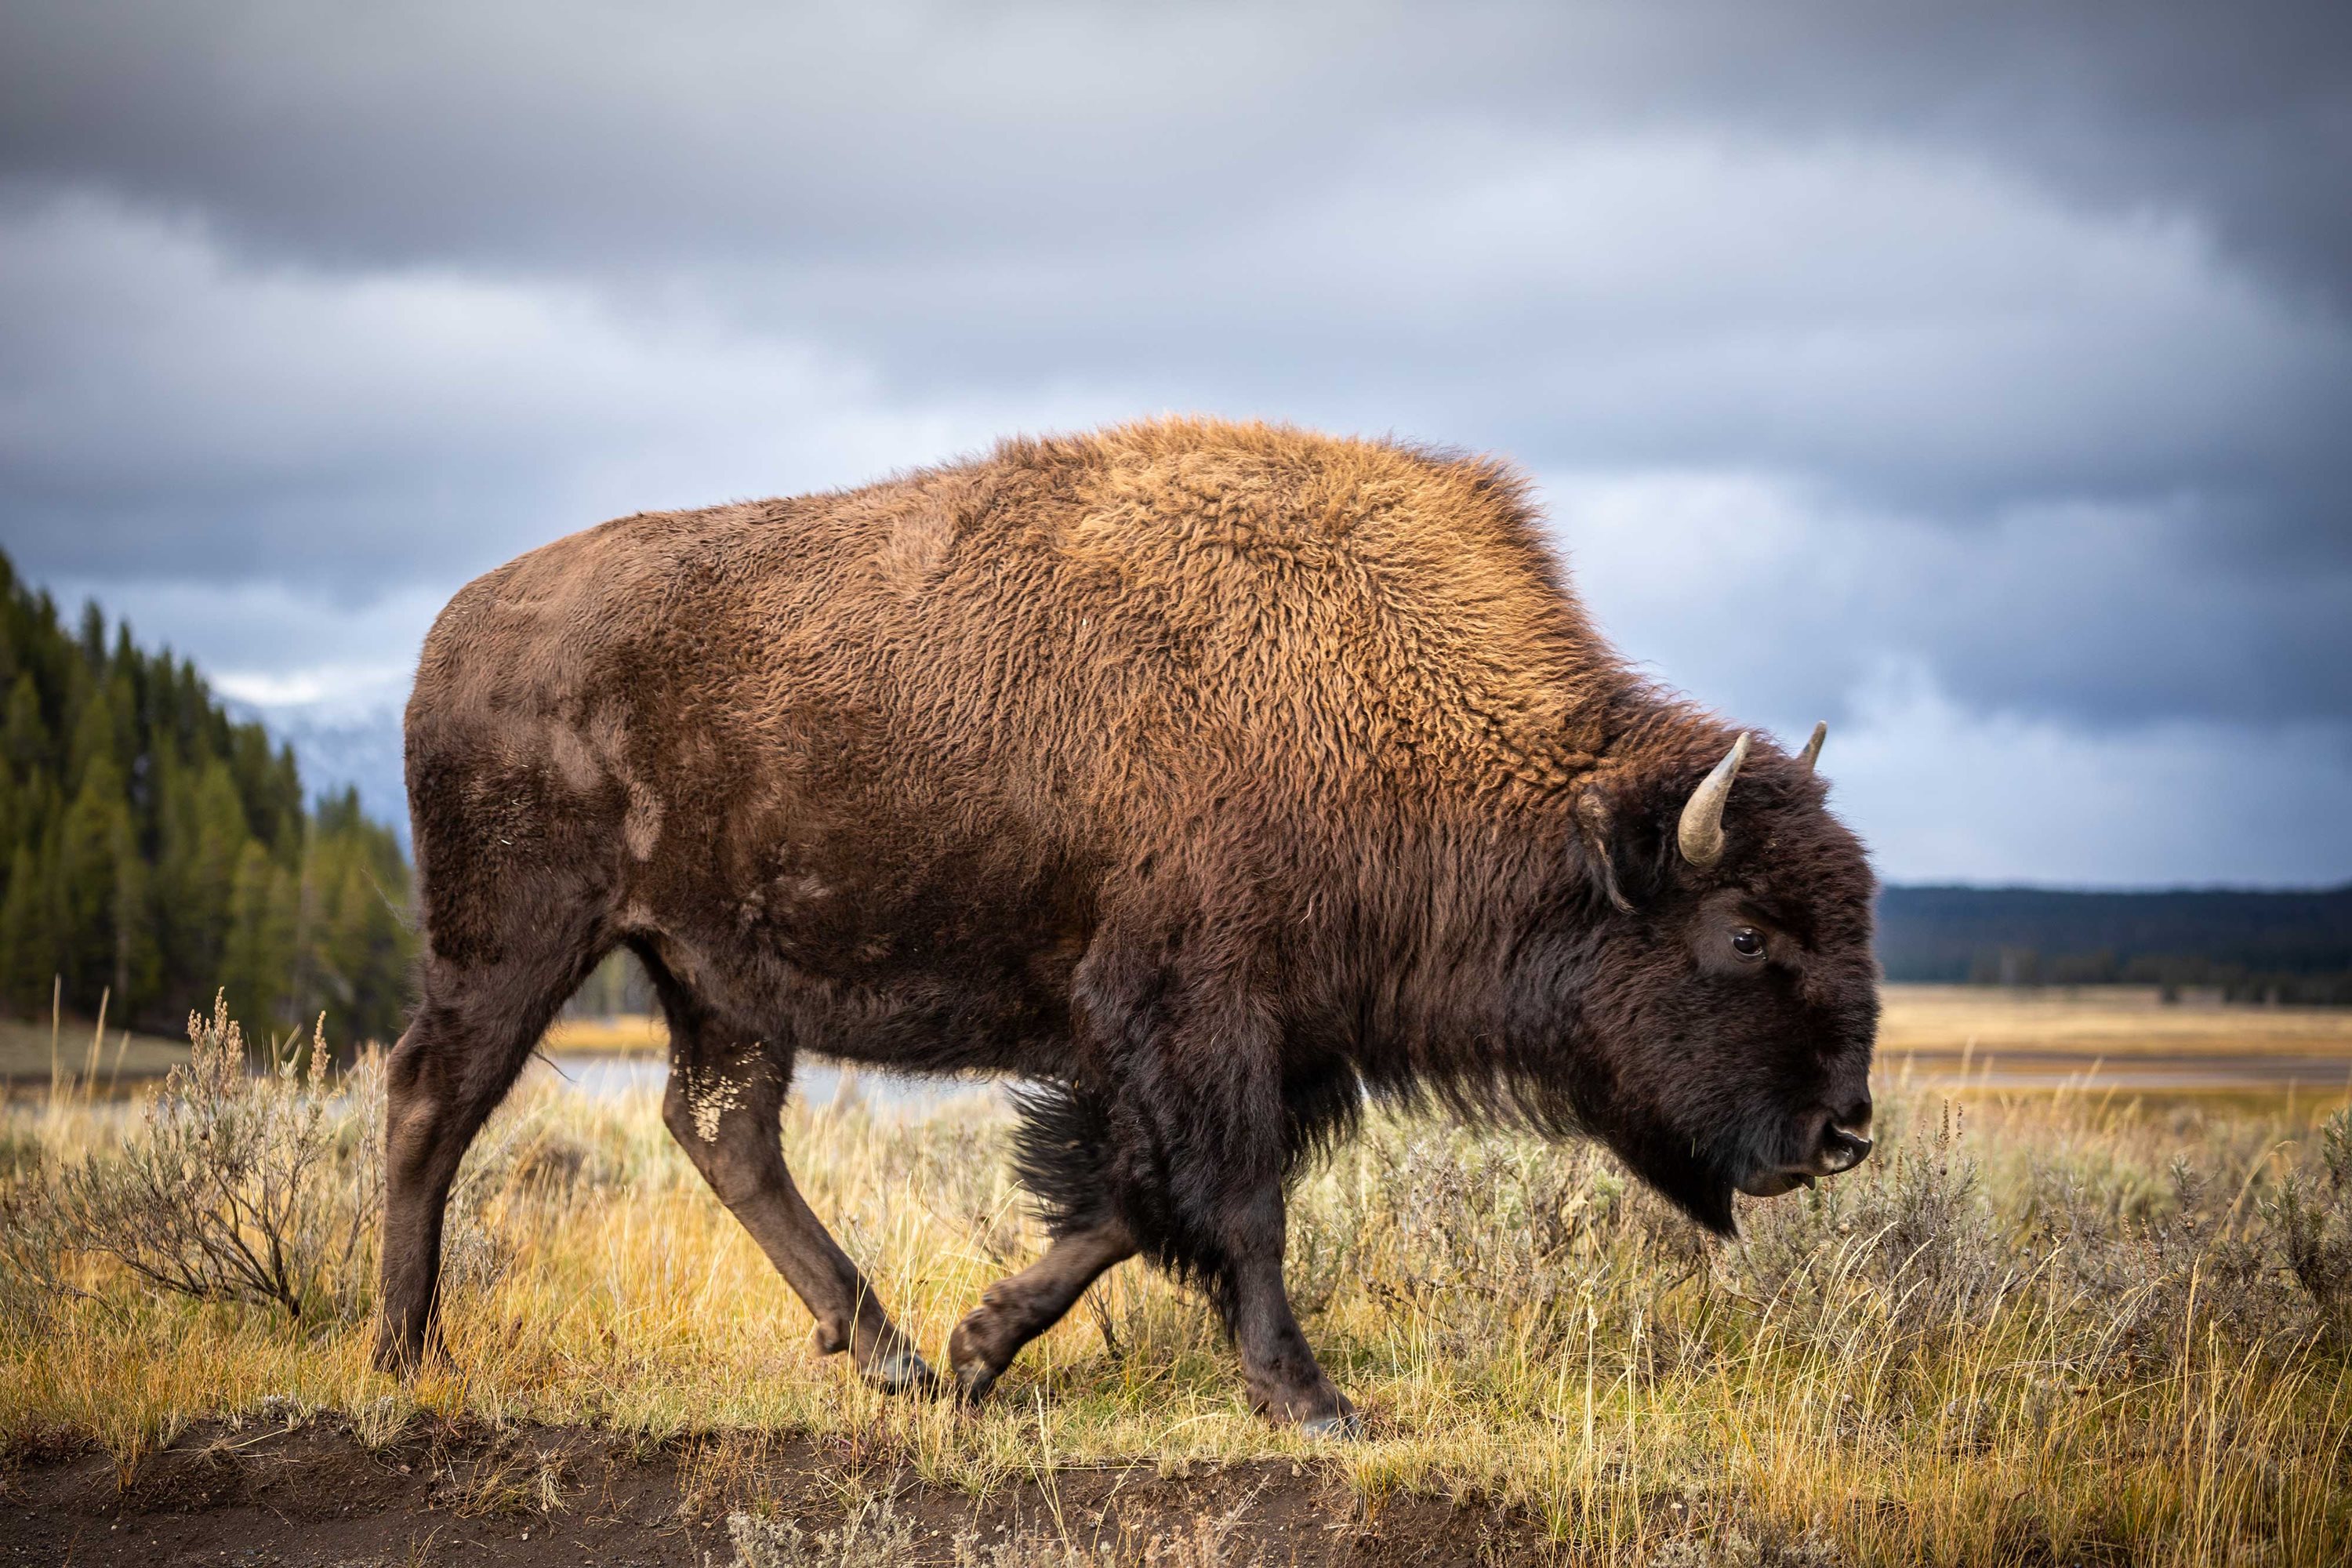 A bison walking through a field.